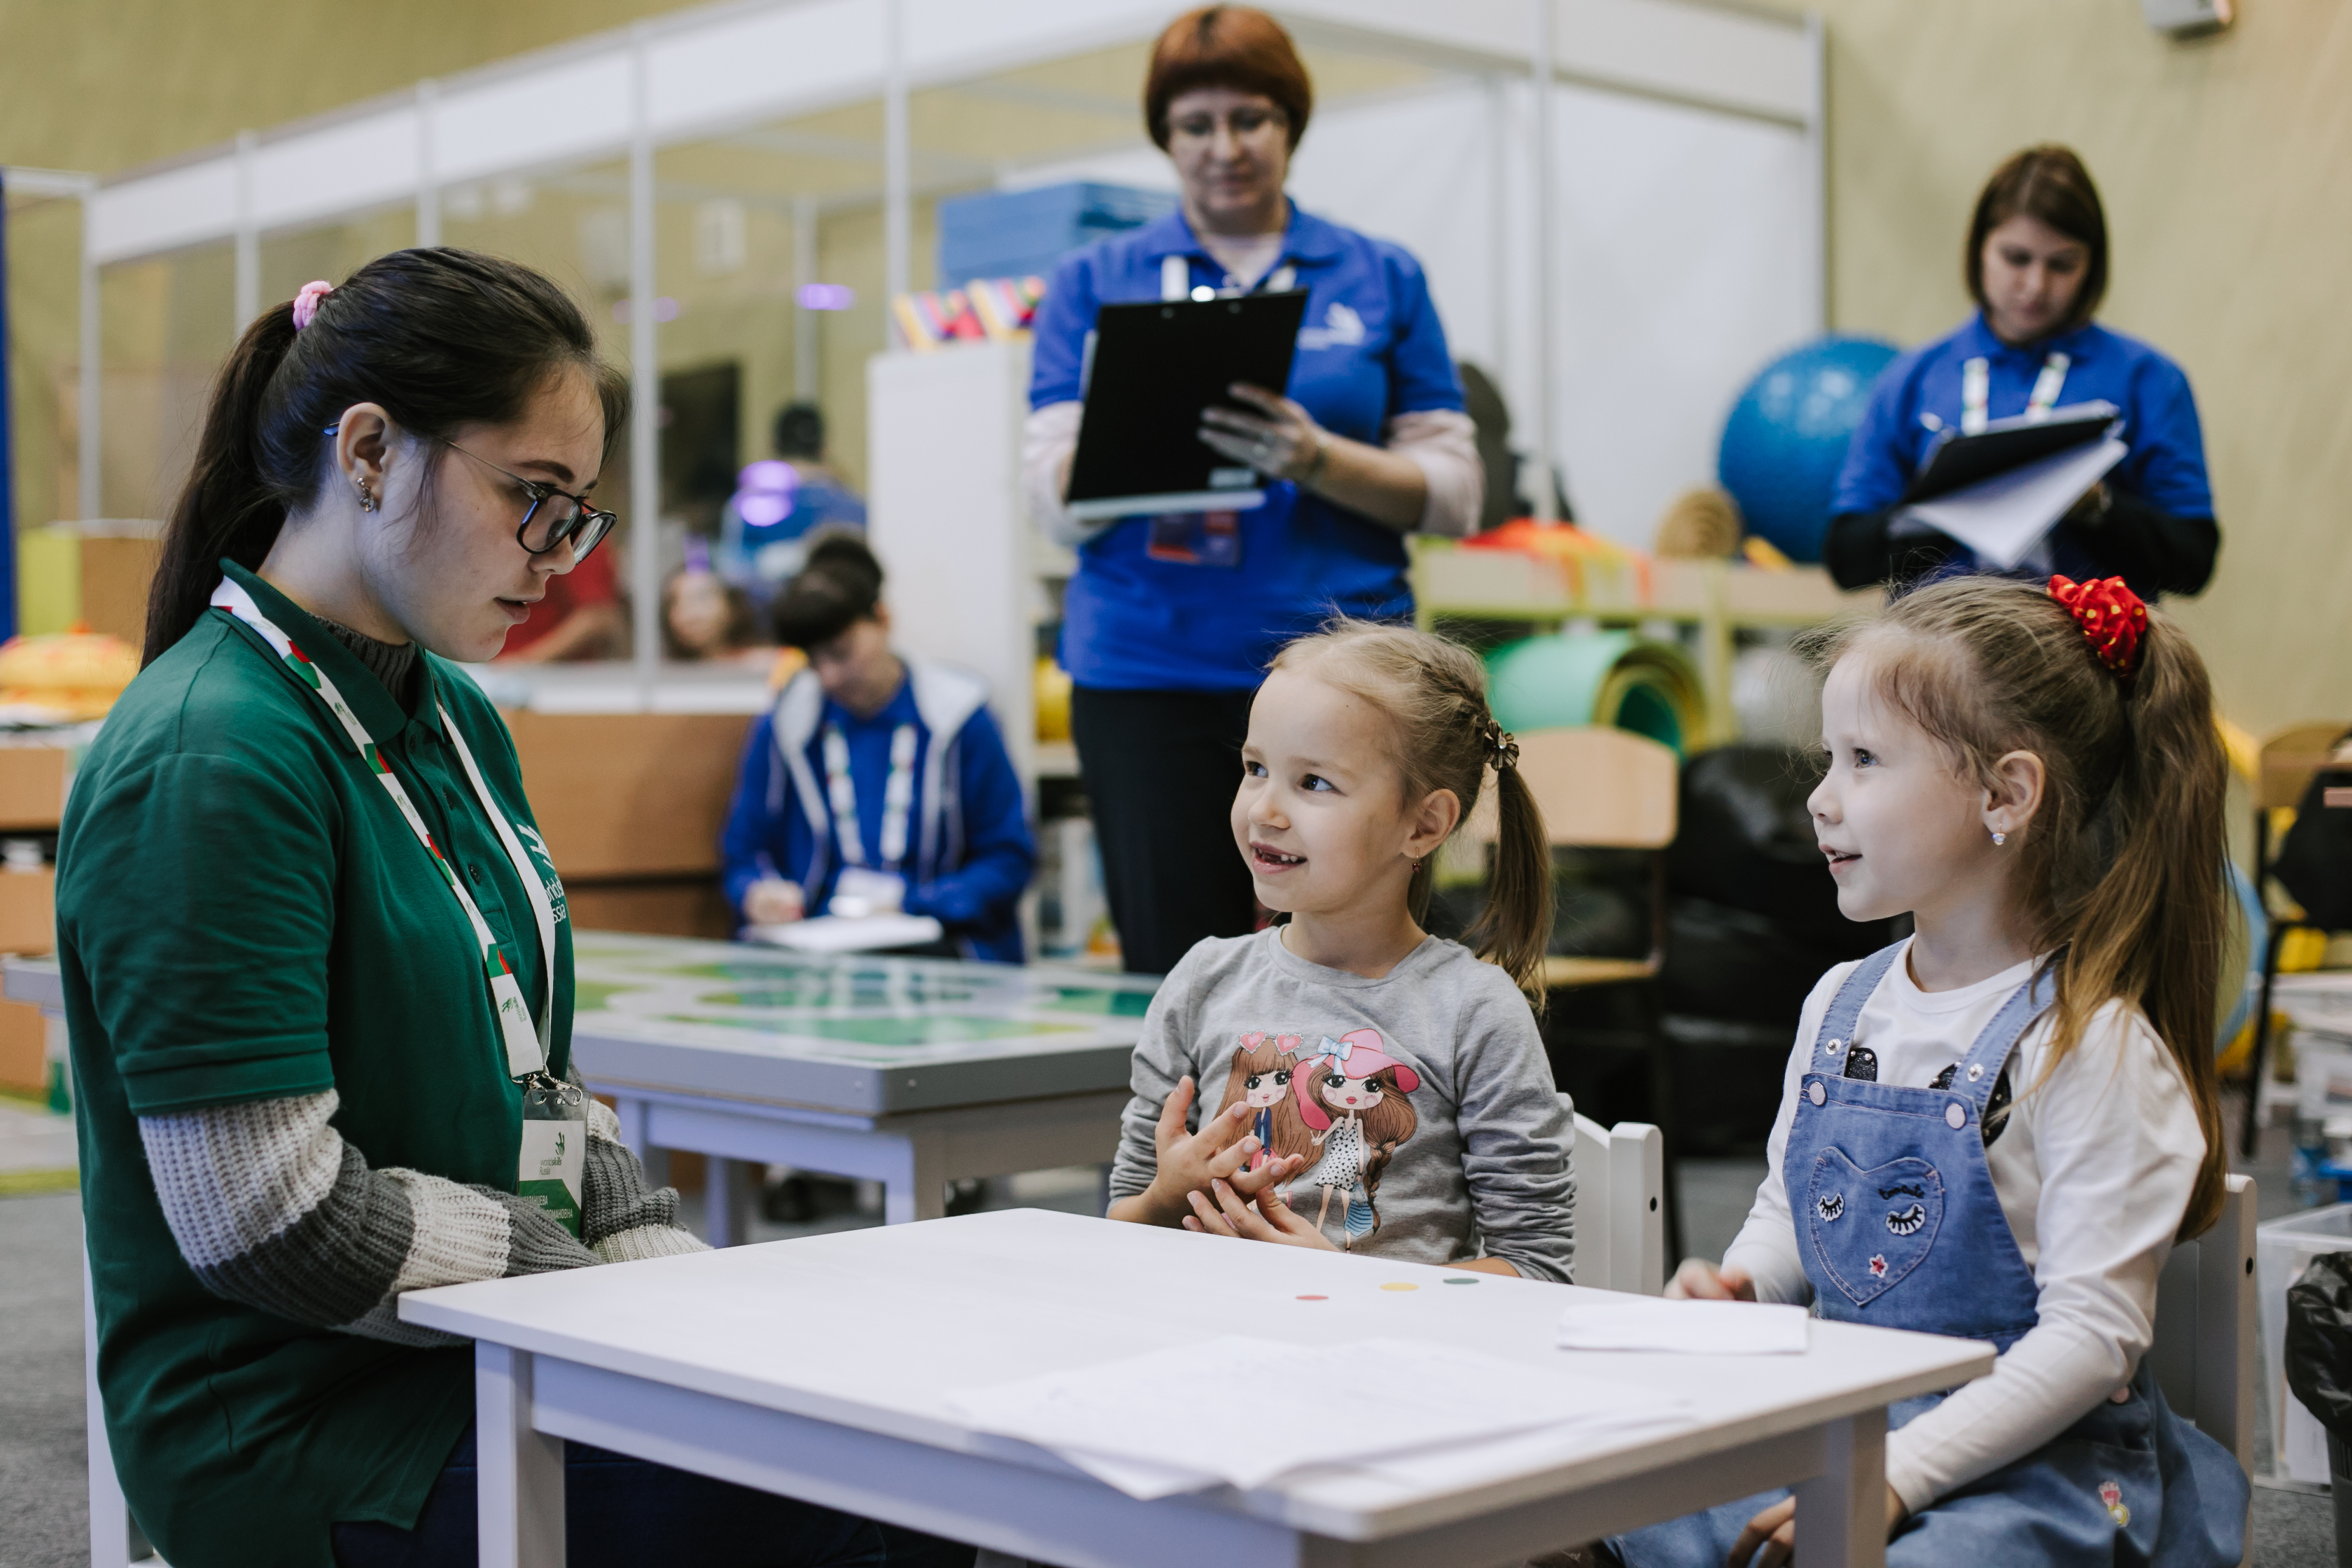 Республика Татарстан приняла у себя участников Финала VIII Национального чемпионата «Молодые профессионалы» (WorldSkills Russia) 2020 из других регионов России. 